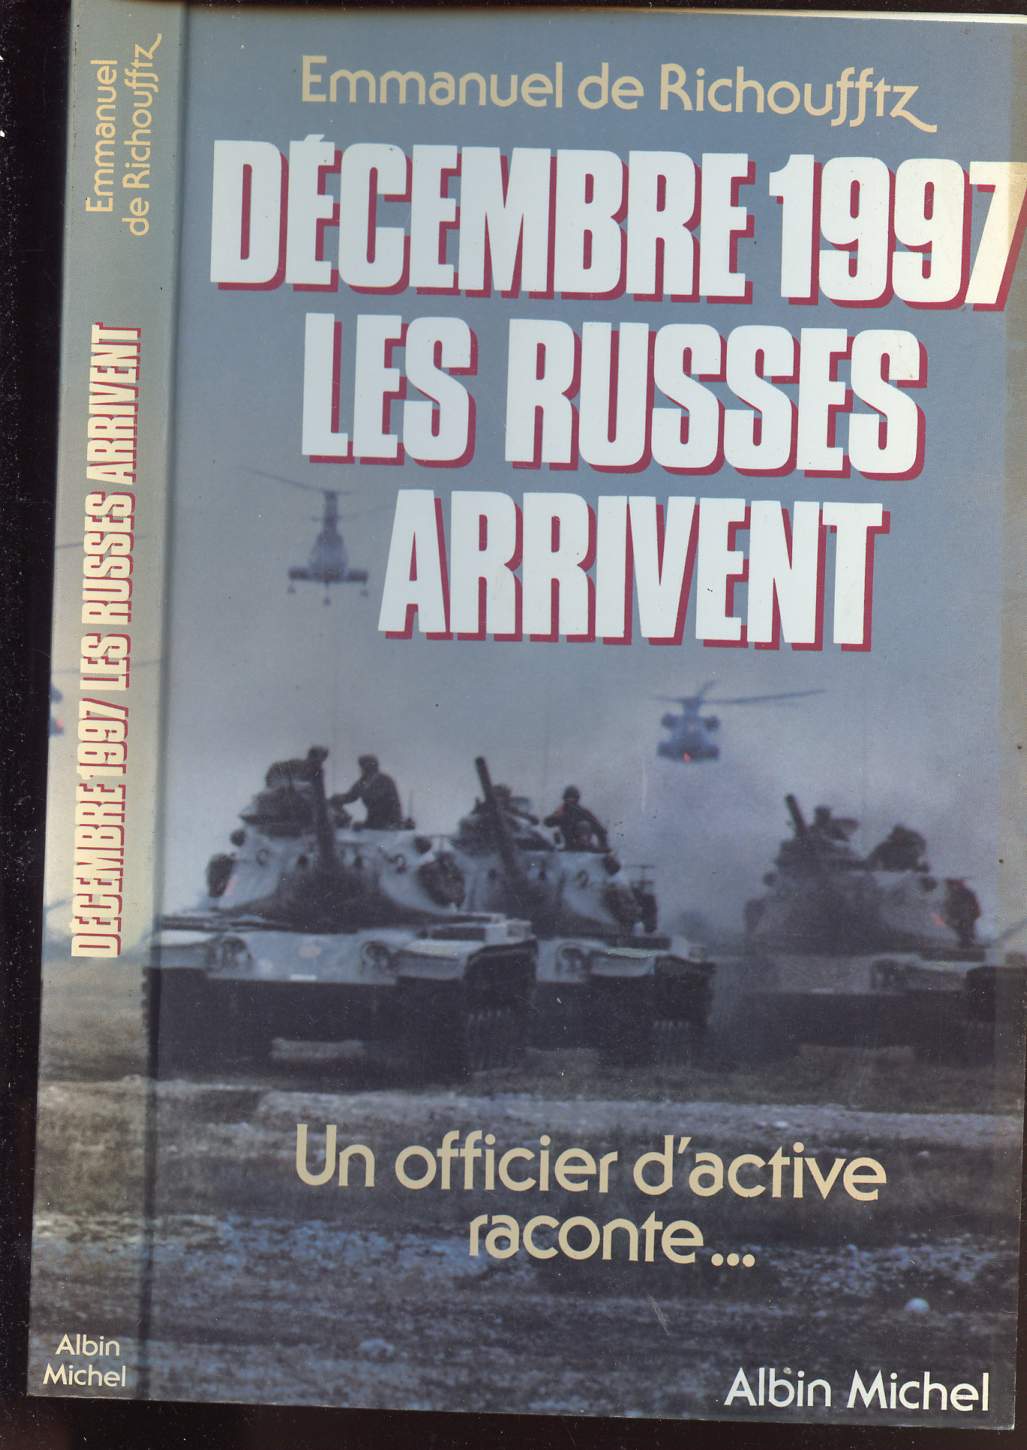 DECEMBRE 1997 LES RUSSES ARRIVENT - un officier d active raconte...